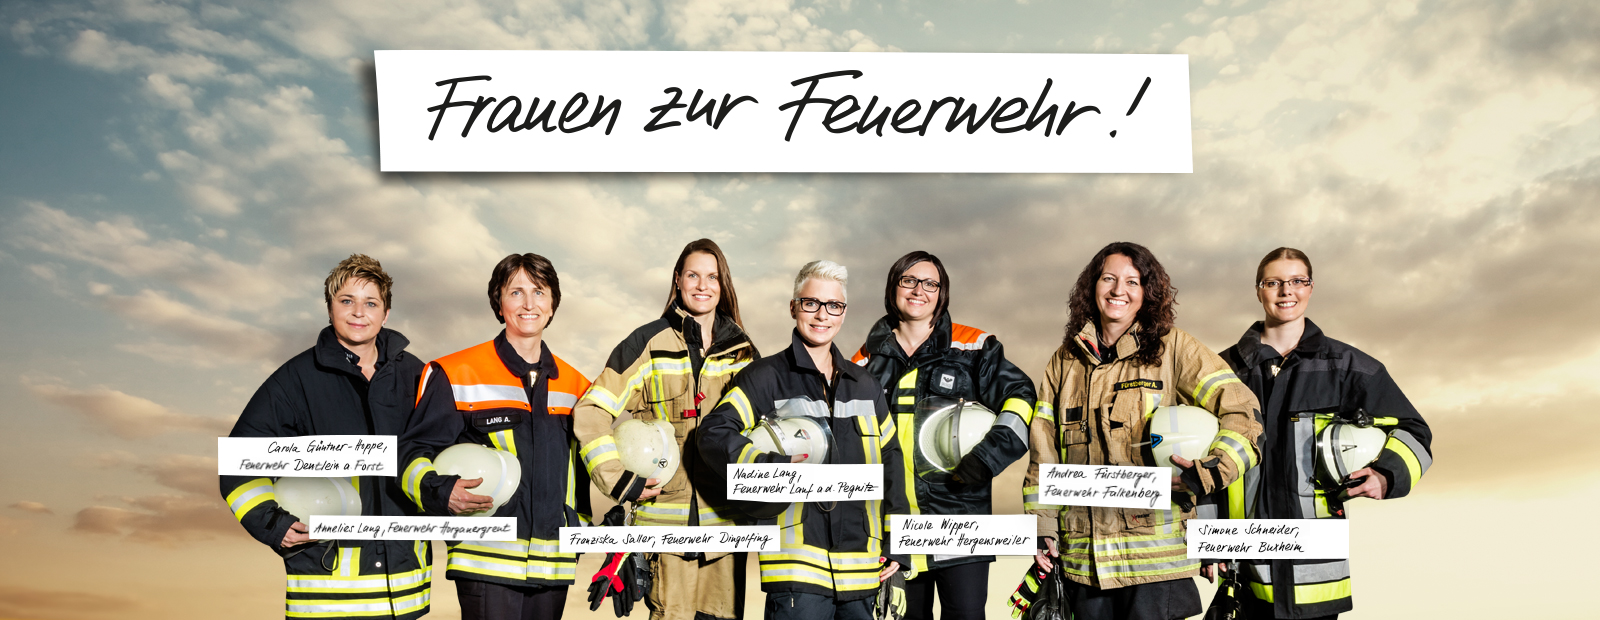 Frauen zur Feuerwehr